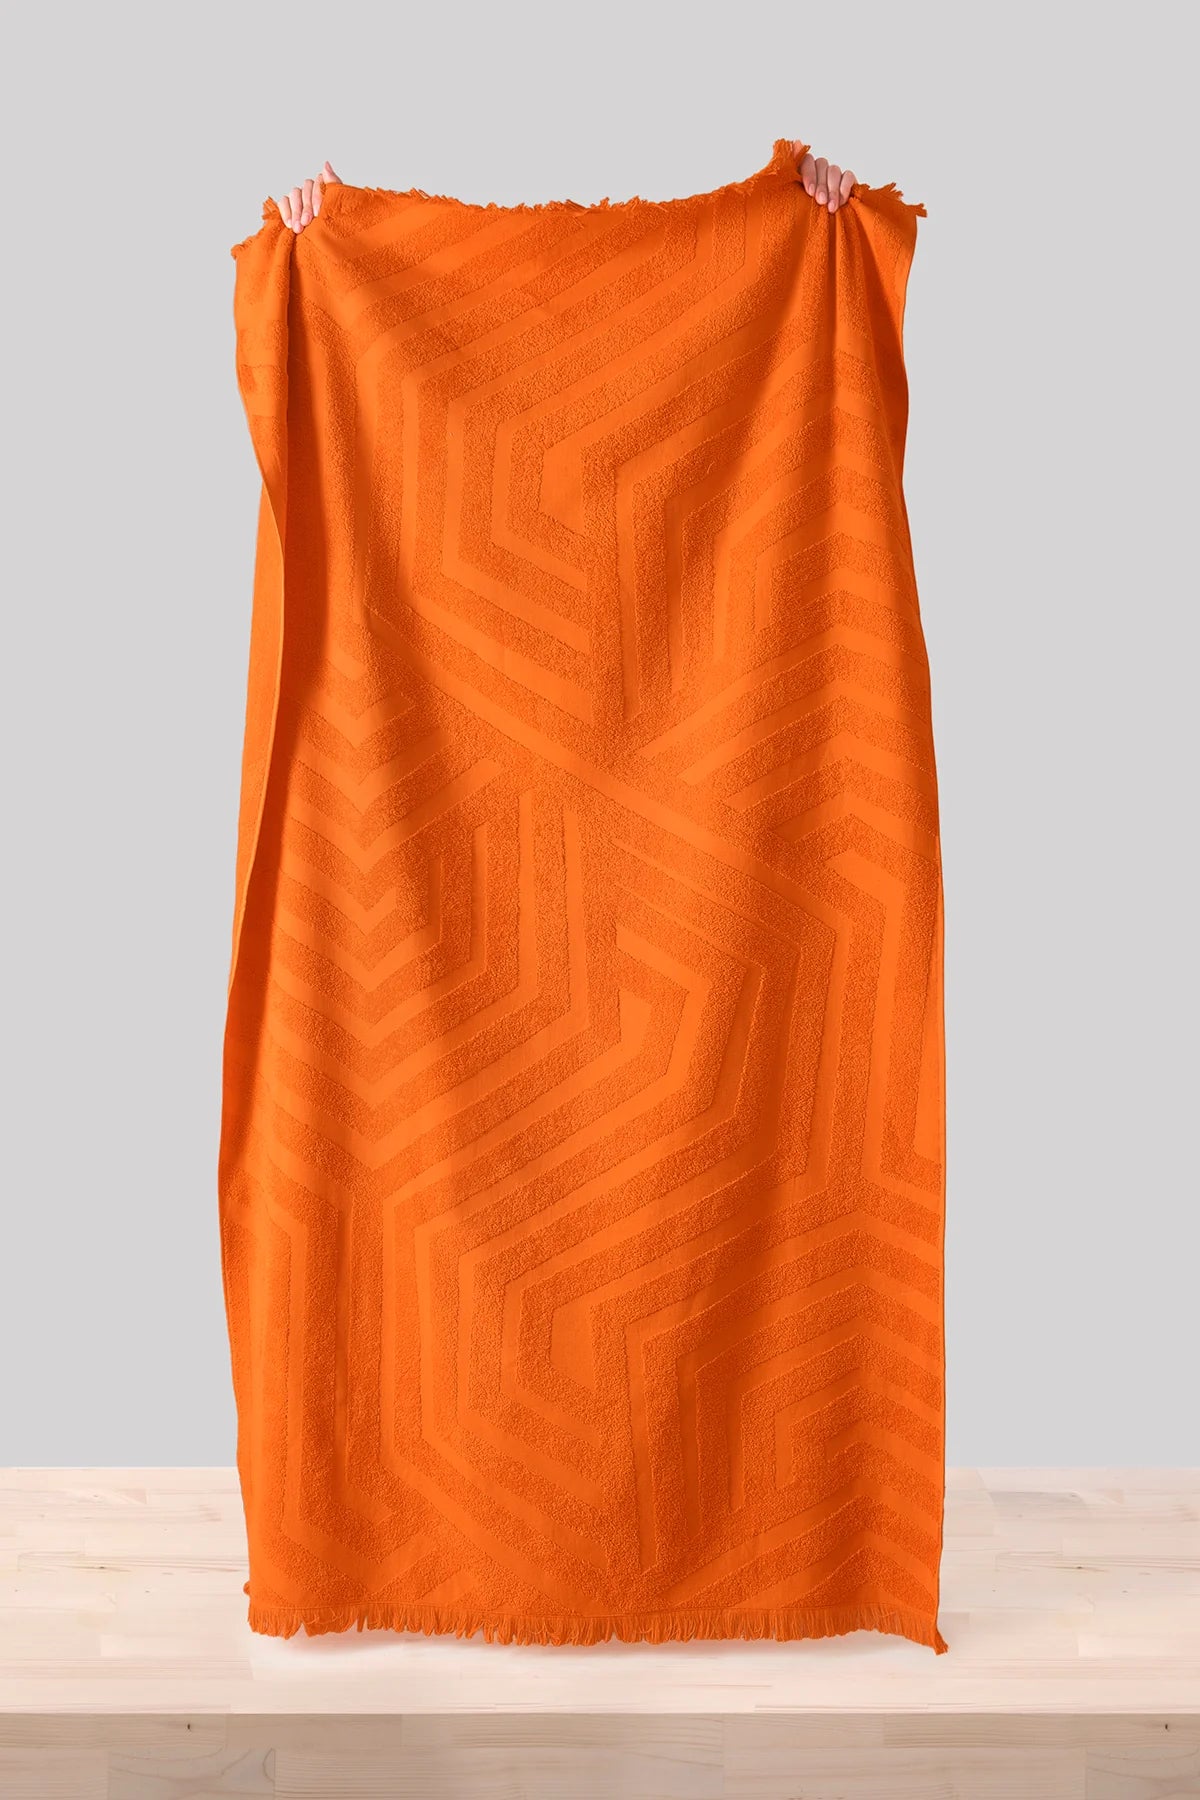 Ceu Sunset - New Summer Trend 100x180cm. Premium Beach Towel